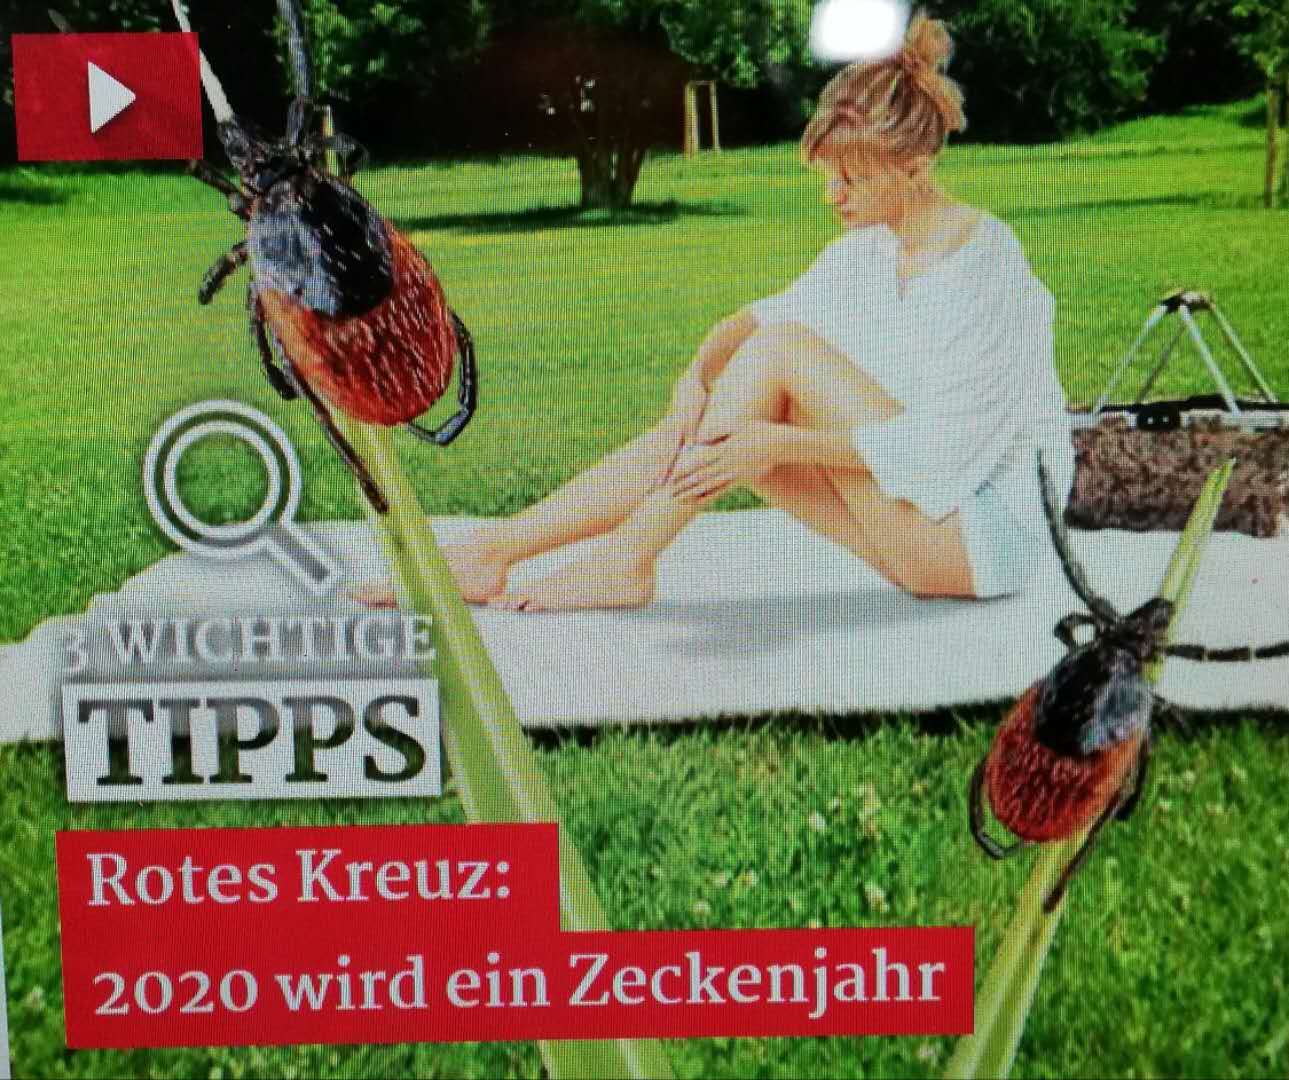 德国红十字会报告 今年将出现多于往年的蜱虫 欧洲新闻 欧洲新侨网